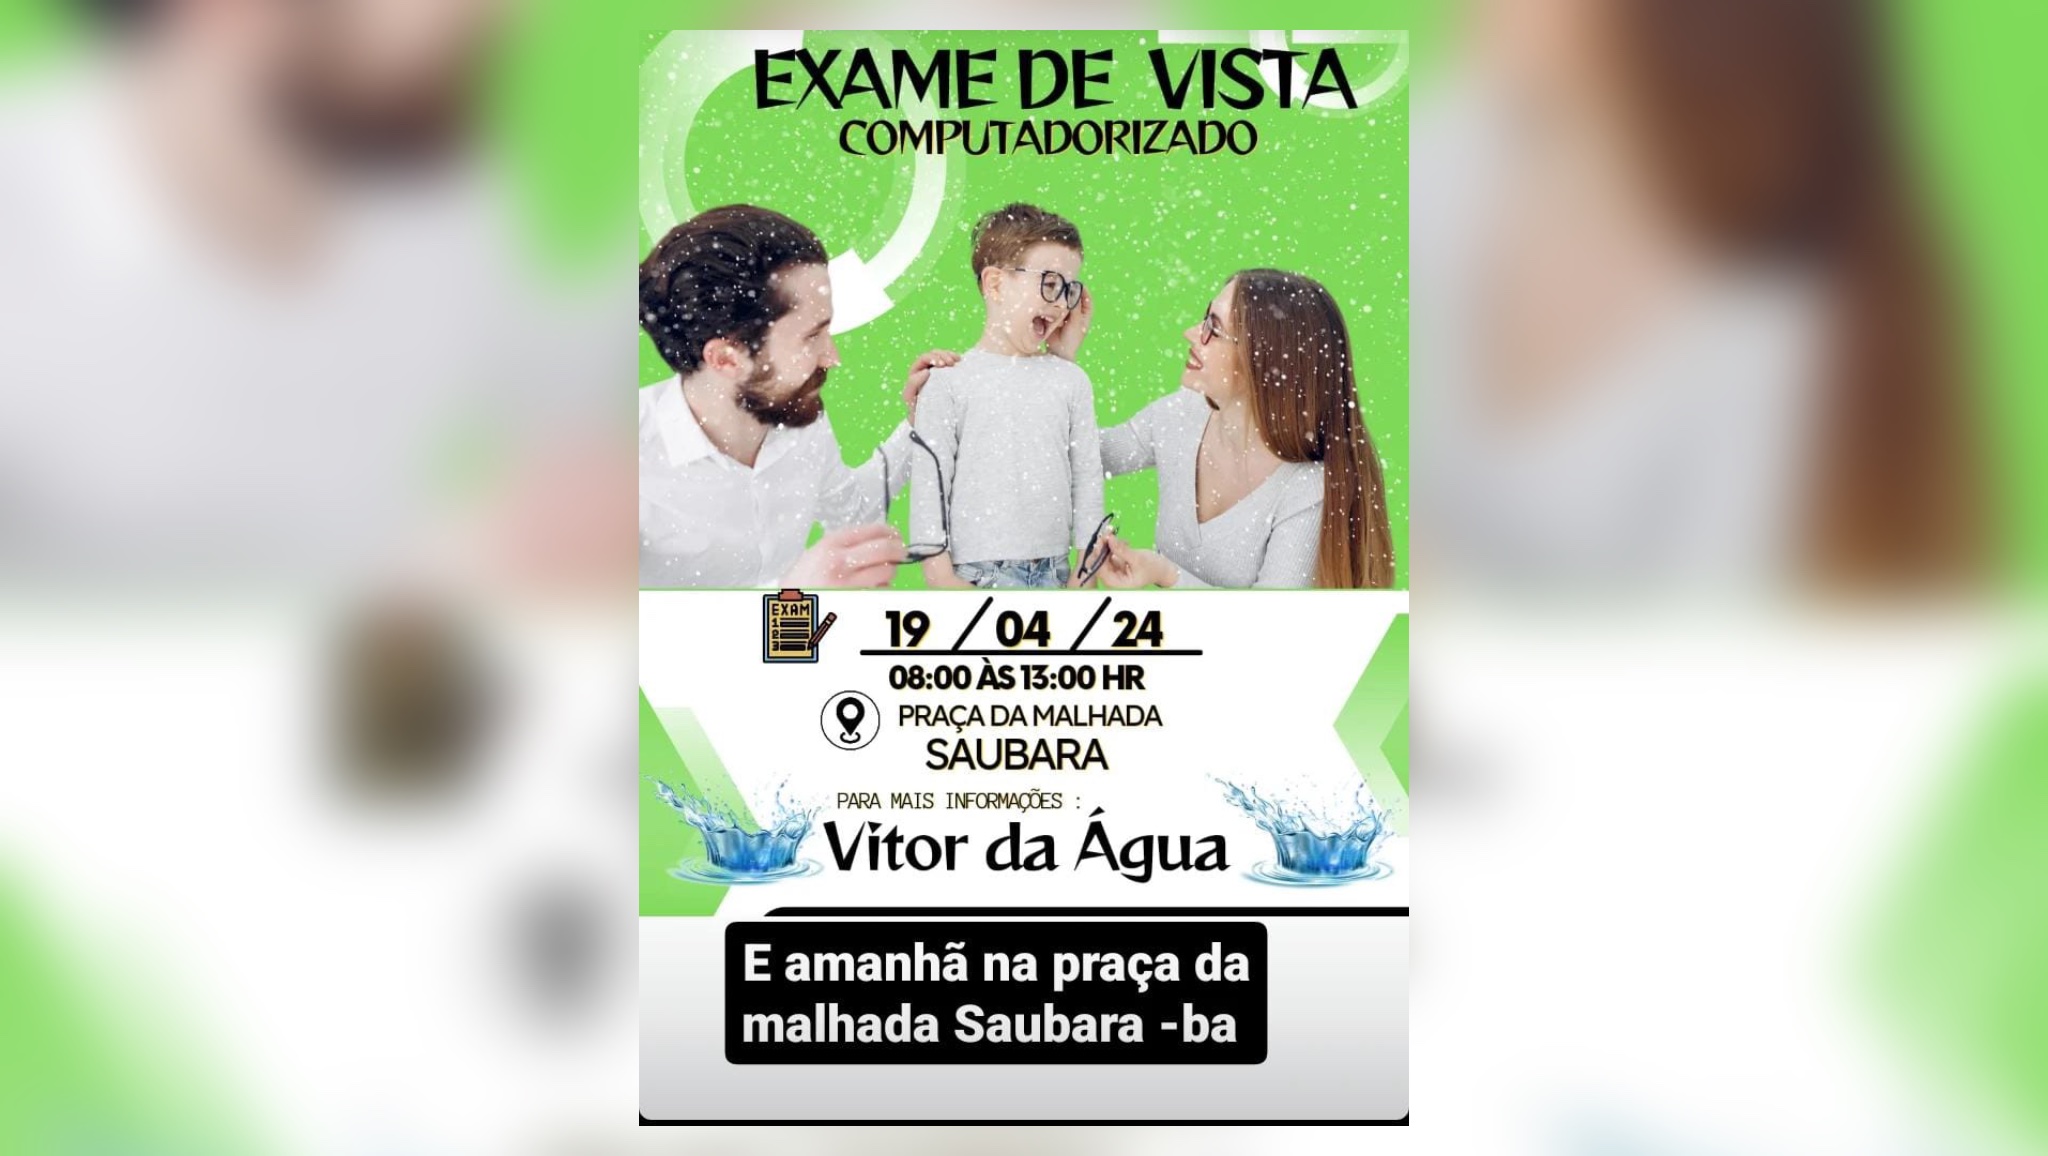 EVENTO BENEFICENTE PARA EXAMES DE VISTA EM SAUBARA, ACONTECE NESTA SEXTA-FEIRA (19)